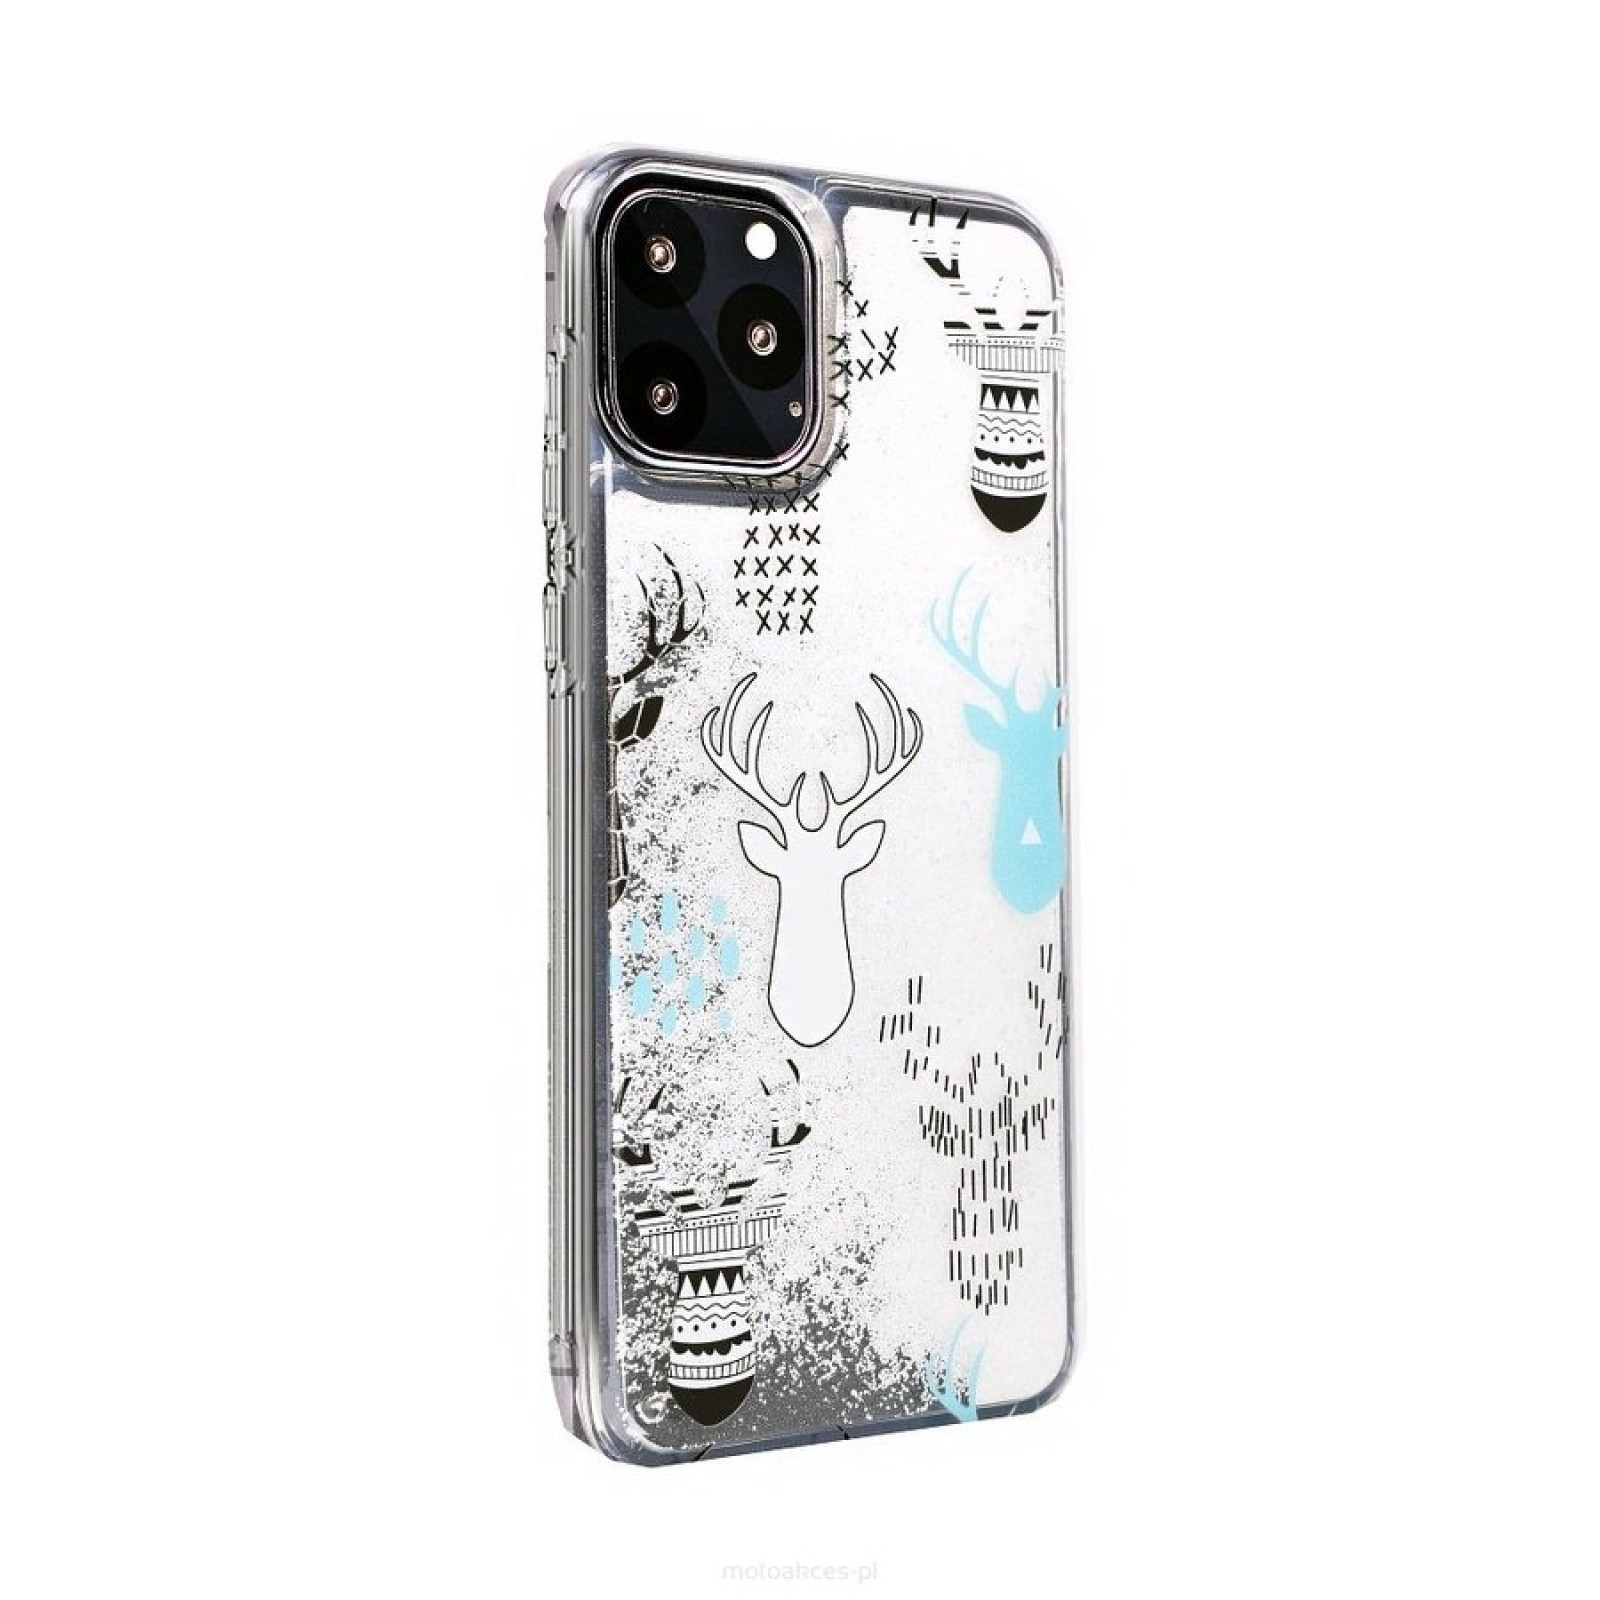 Гръб Winter case за Iphone 11 Pro 5.8 - Reindeers